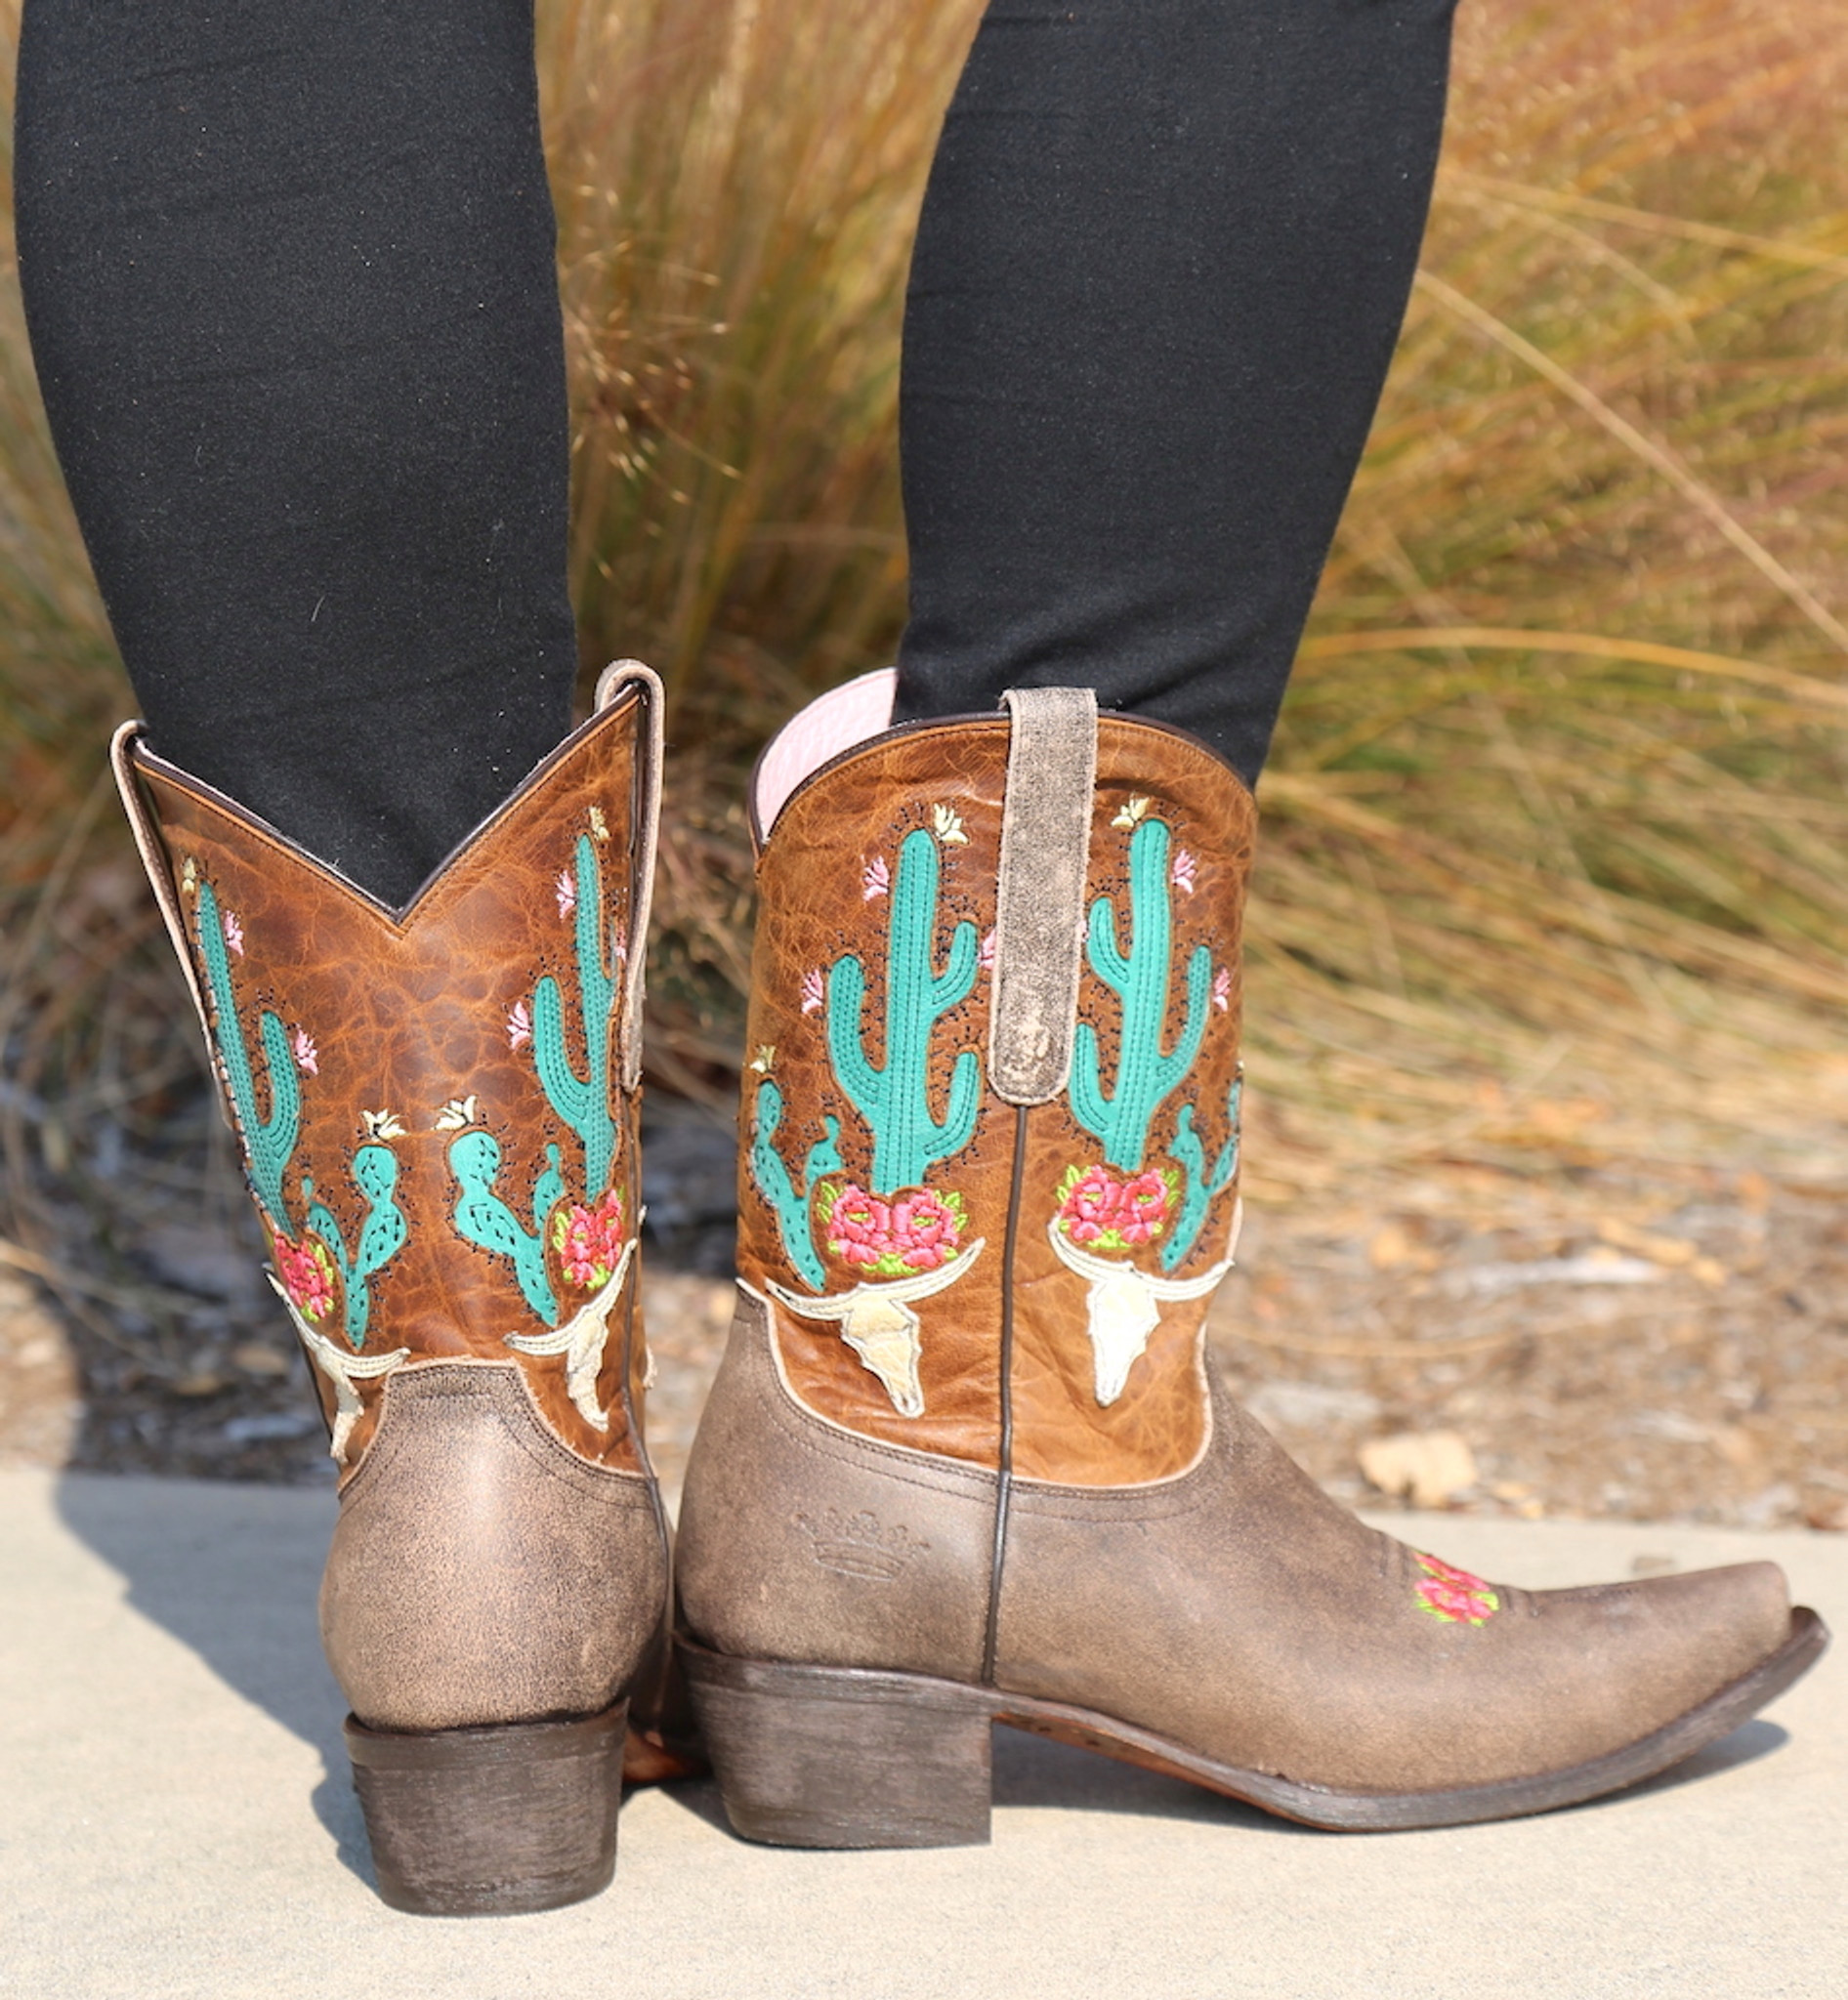 rose and caramel tan boots